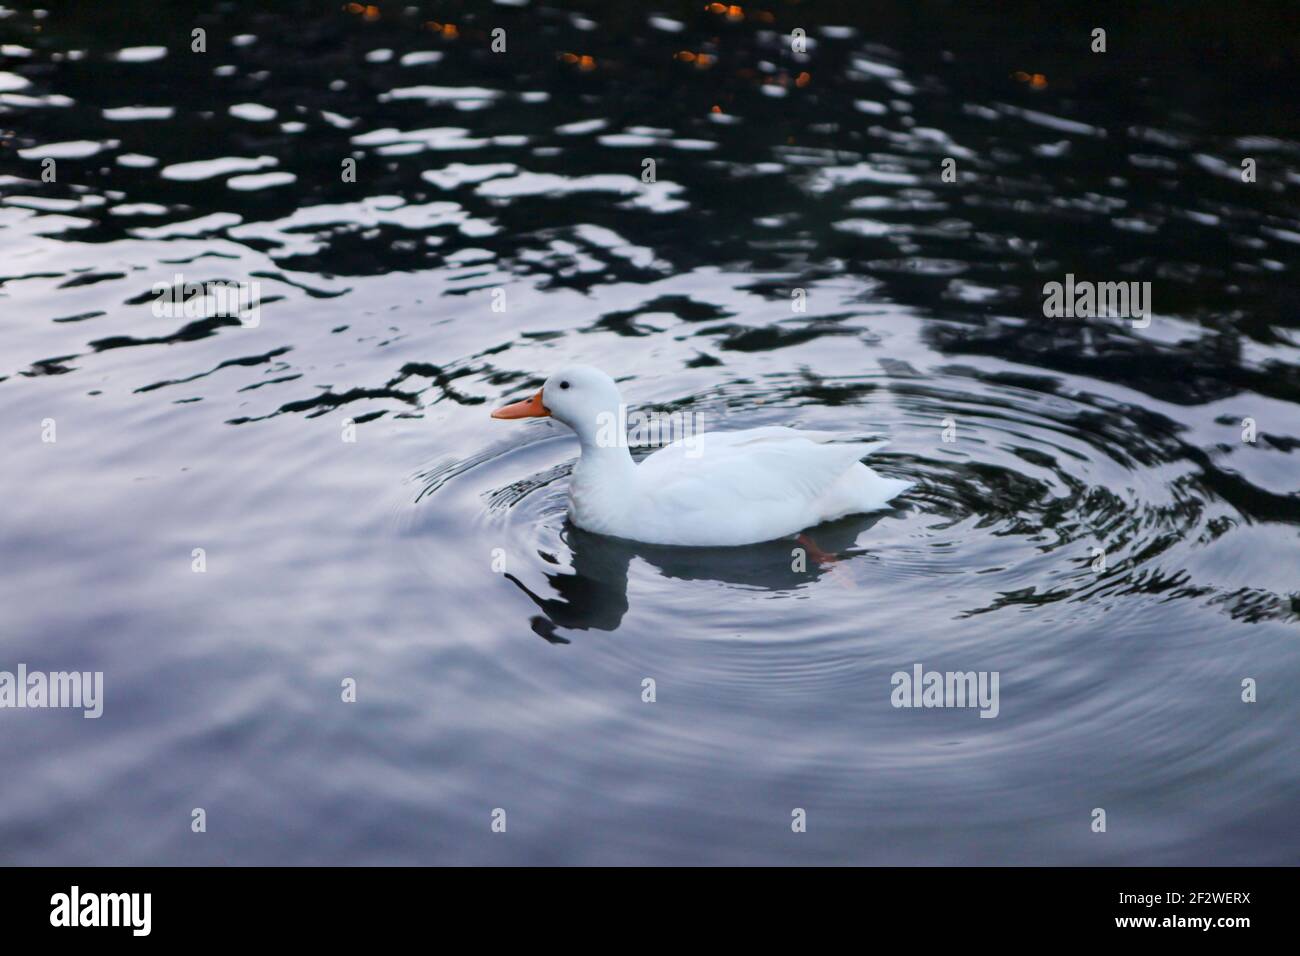 white duck with orange beak swimming in the lake Stock Photo